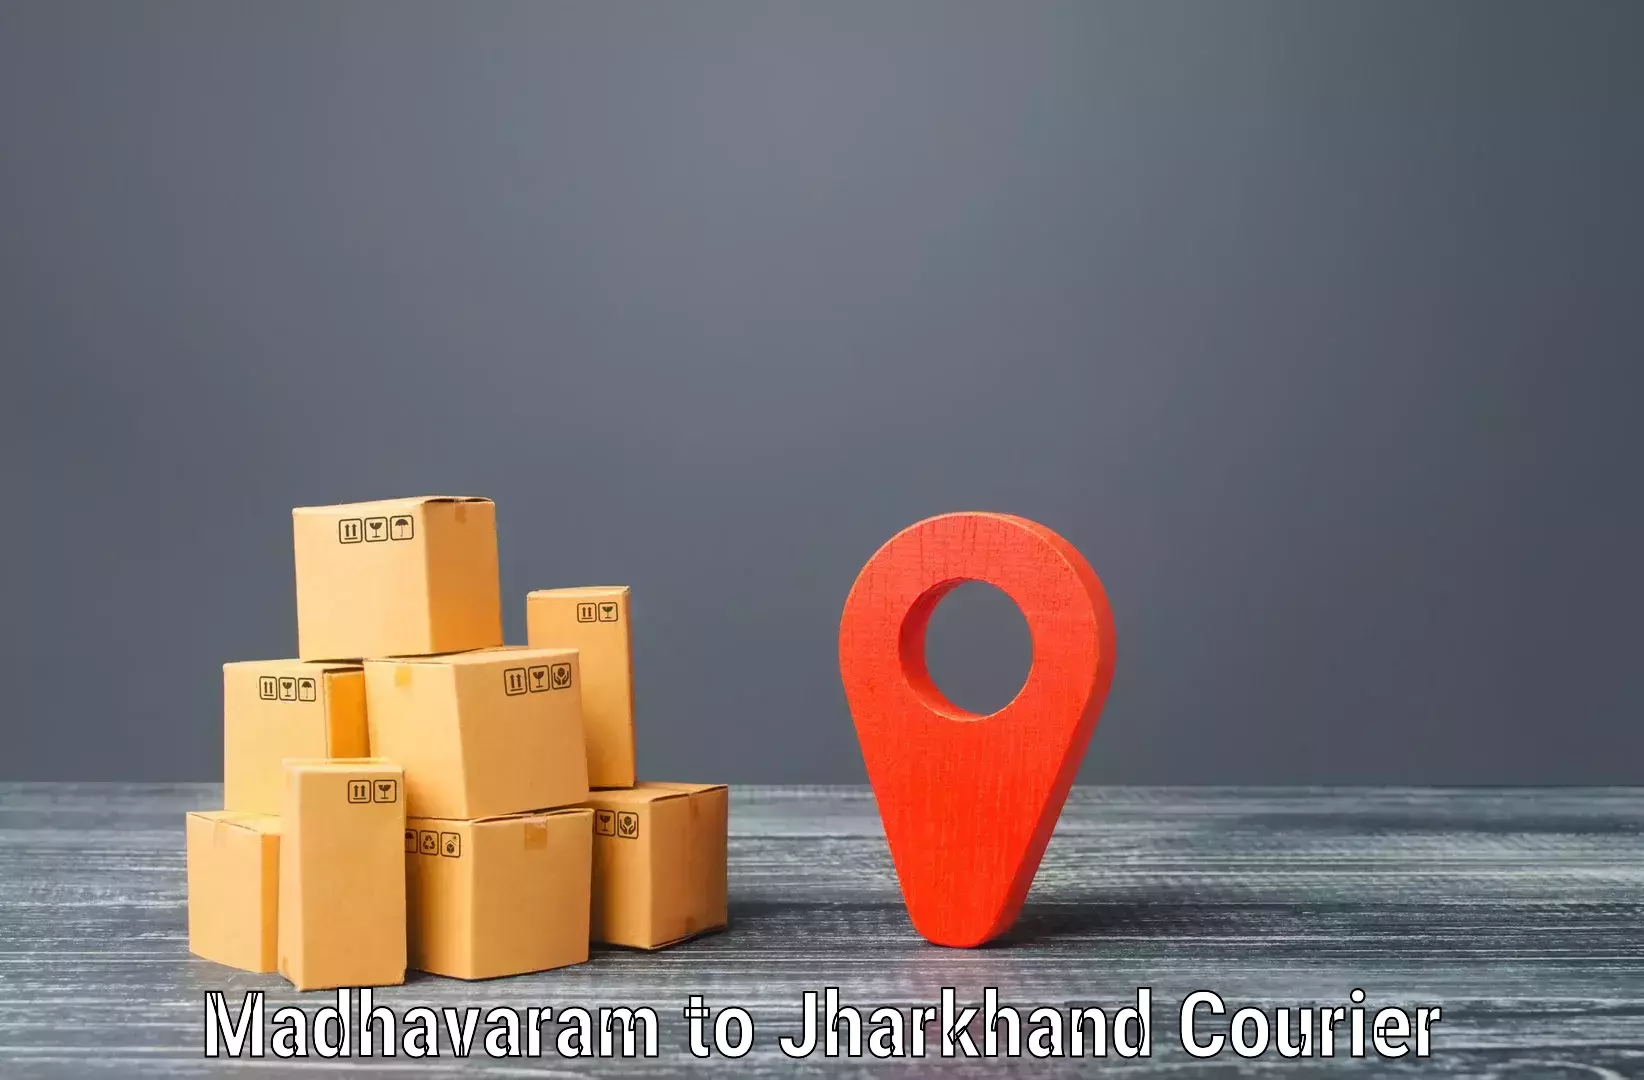 Comprehensive shipping network Madhavaram to Itkhori